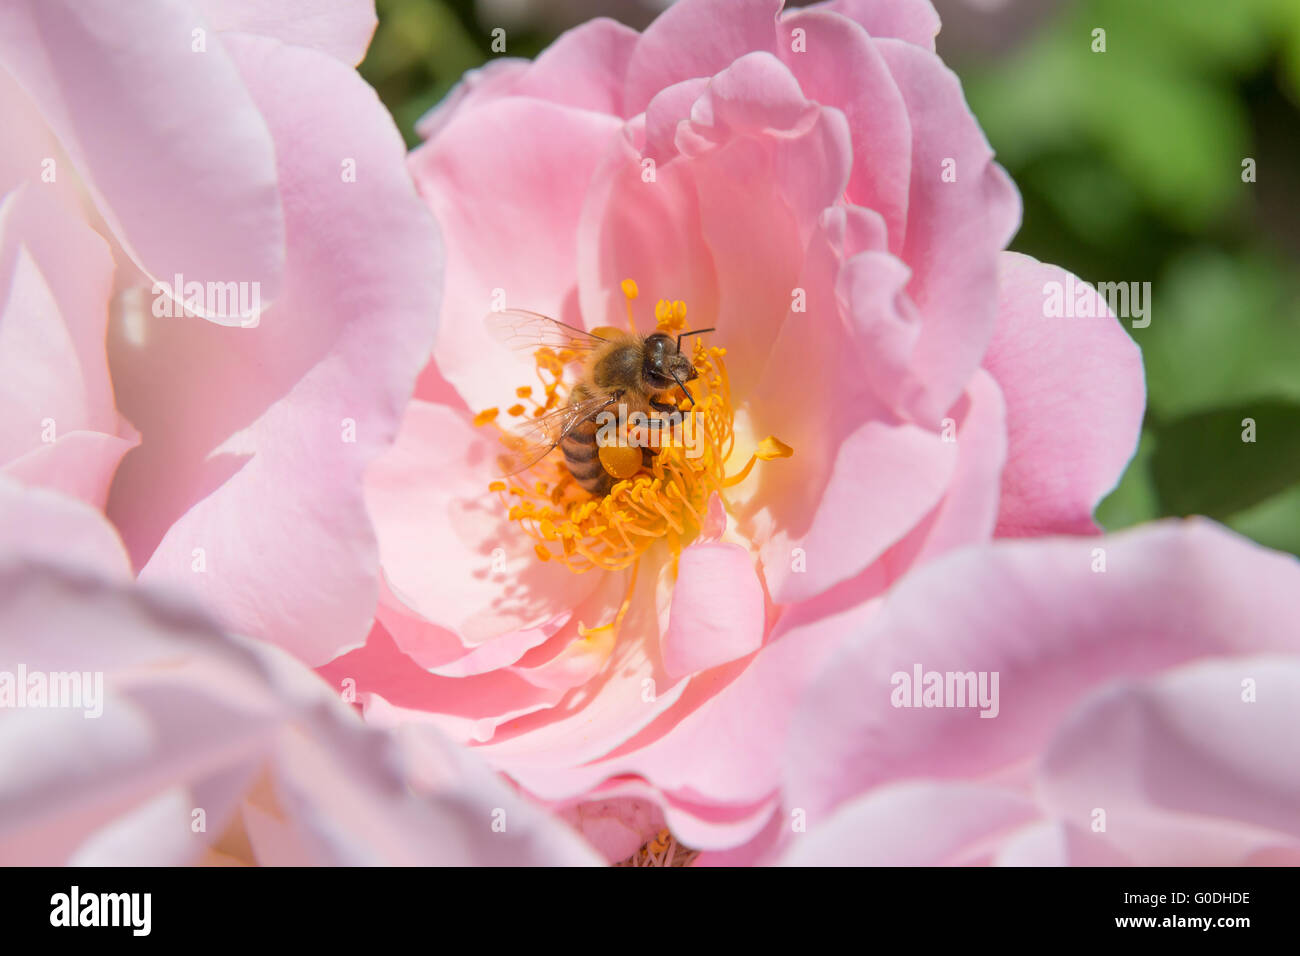 Biene auf Blüte Stempel Stockfoto